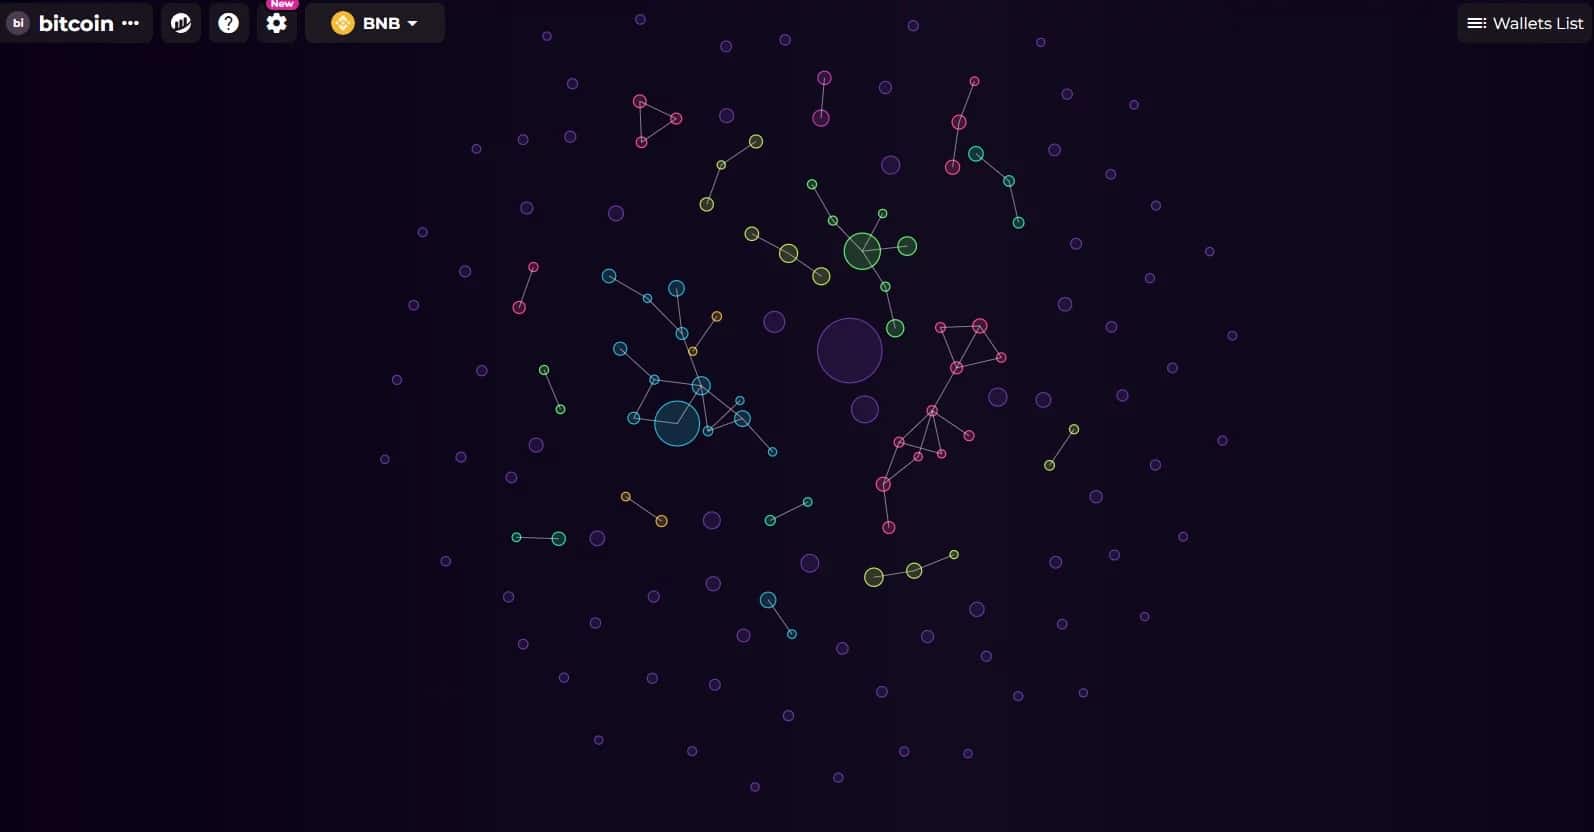 Скриншот карты пузырей, представляющей основных держателей биткойнов и их взаимодействие